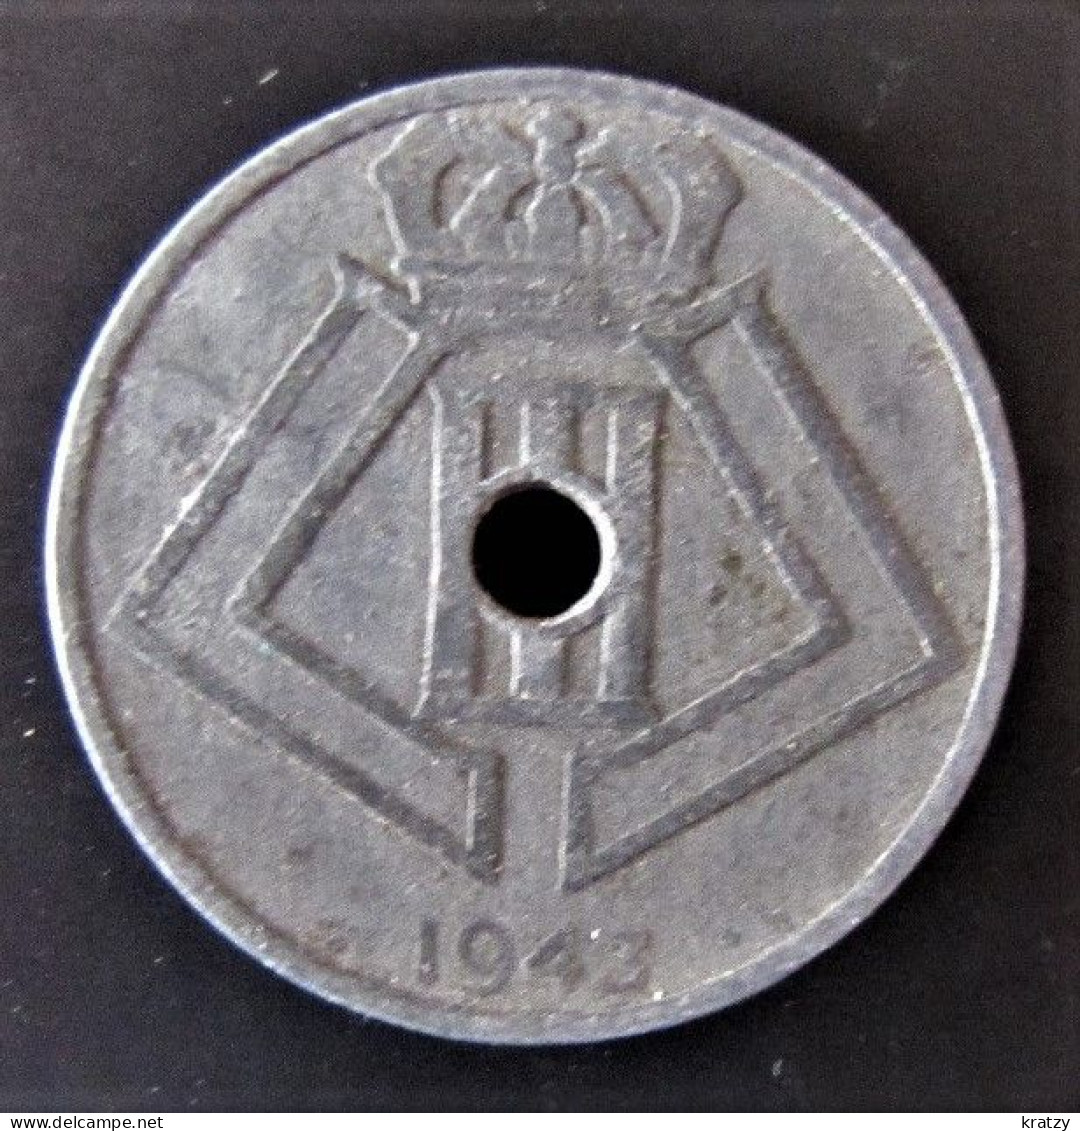 BELGIQUE - Pièce De 25 Centimes - Zinc - 1943 - 25 Centimes